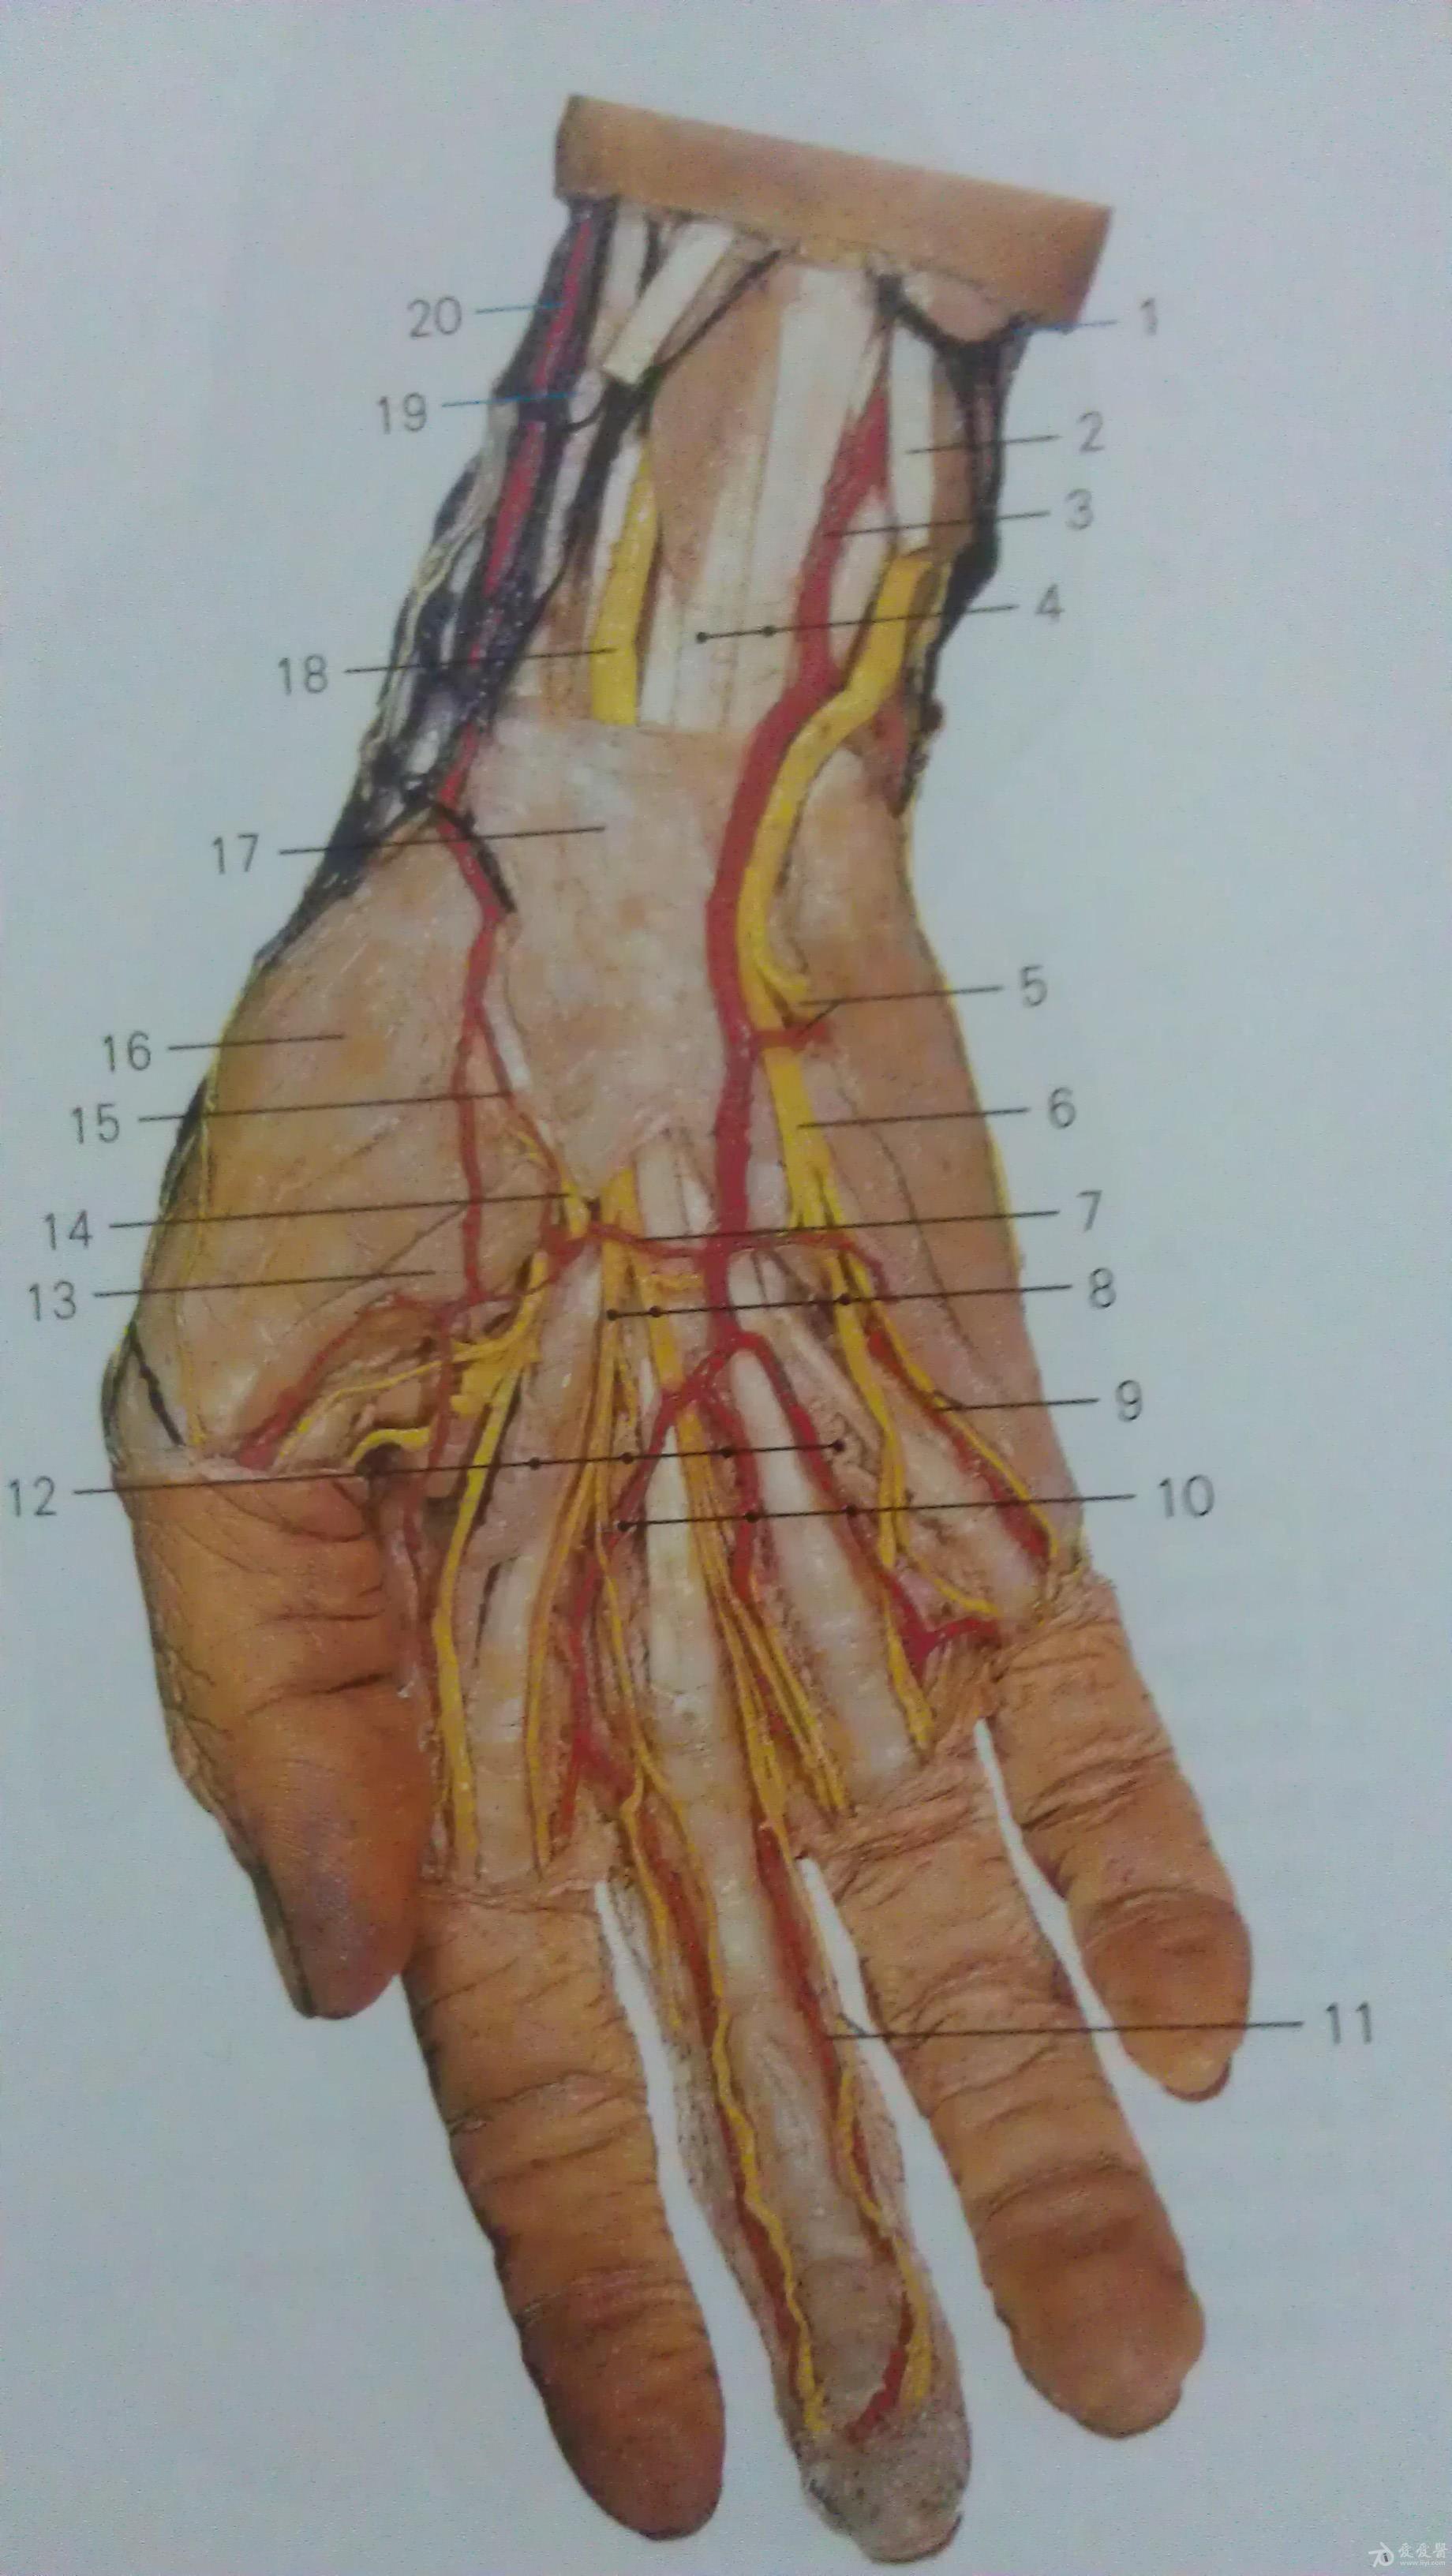 尺动脉的准确位置图片